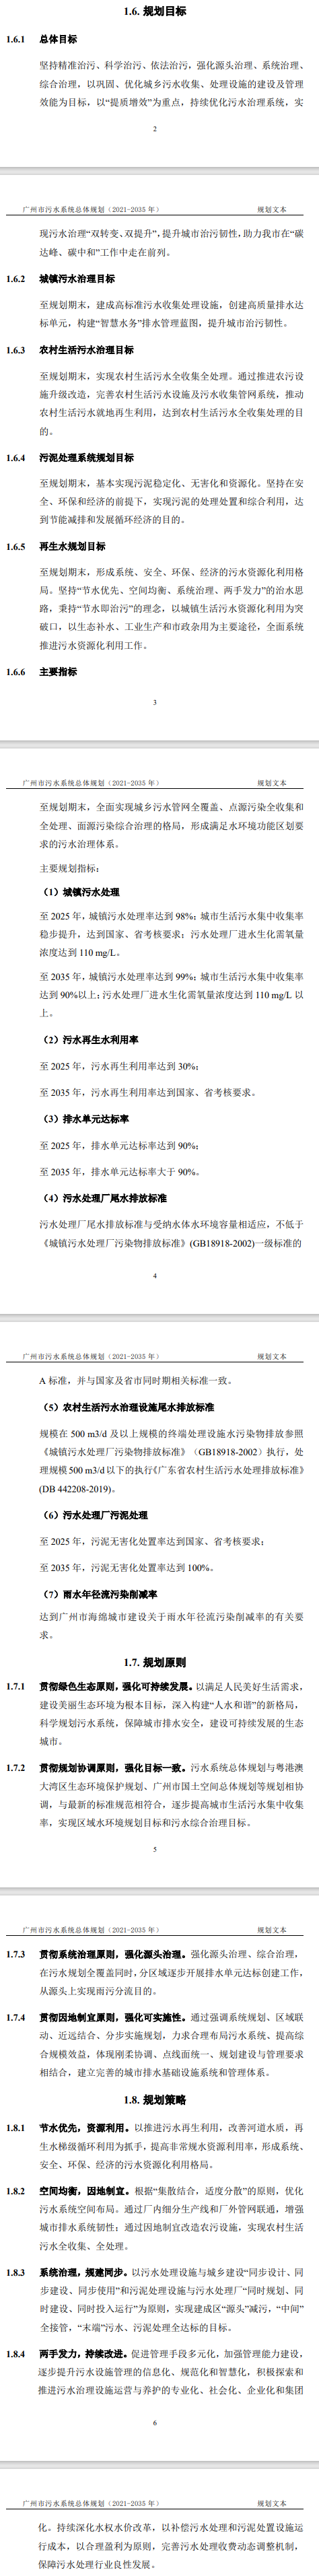 《广州市污水系统总体规划（2021-2035年）》印发-环保卫士